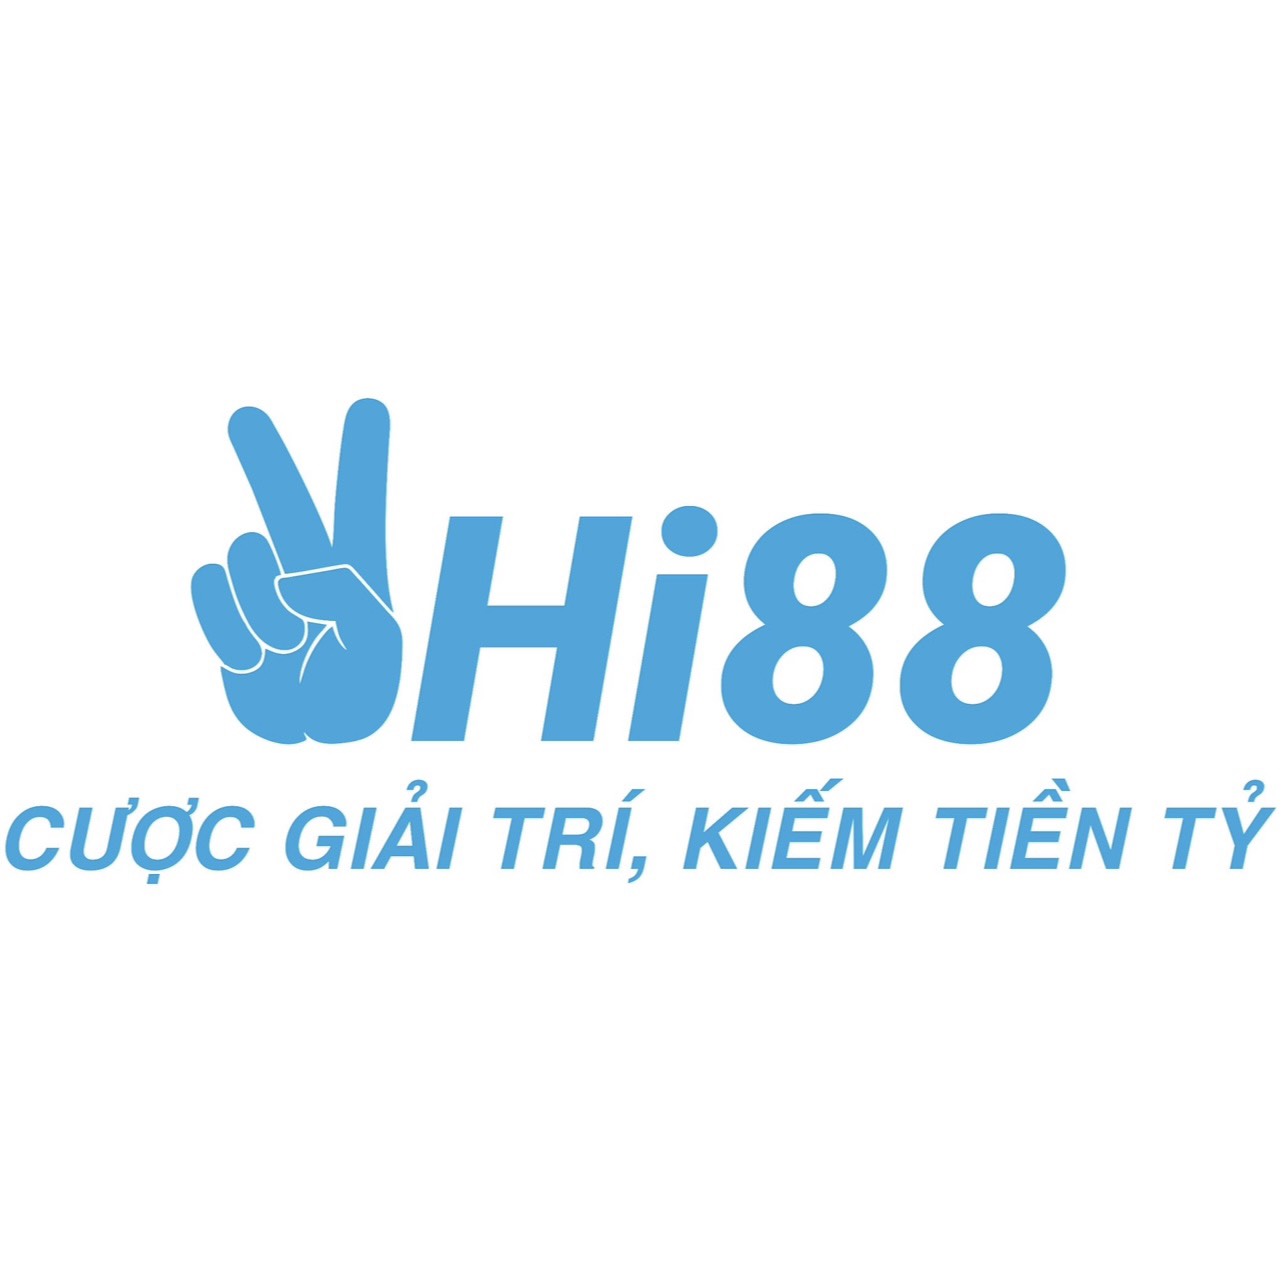 Hi88 - Trang hỗ trợ đăng ký chính thức nhà cái Hi88